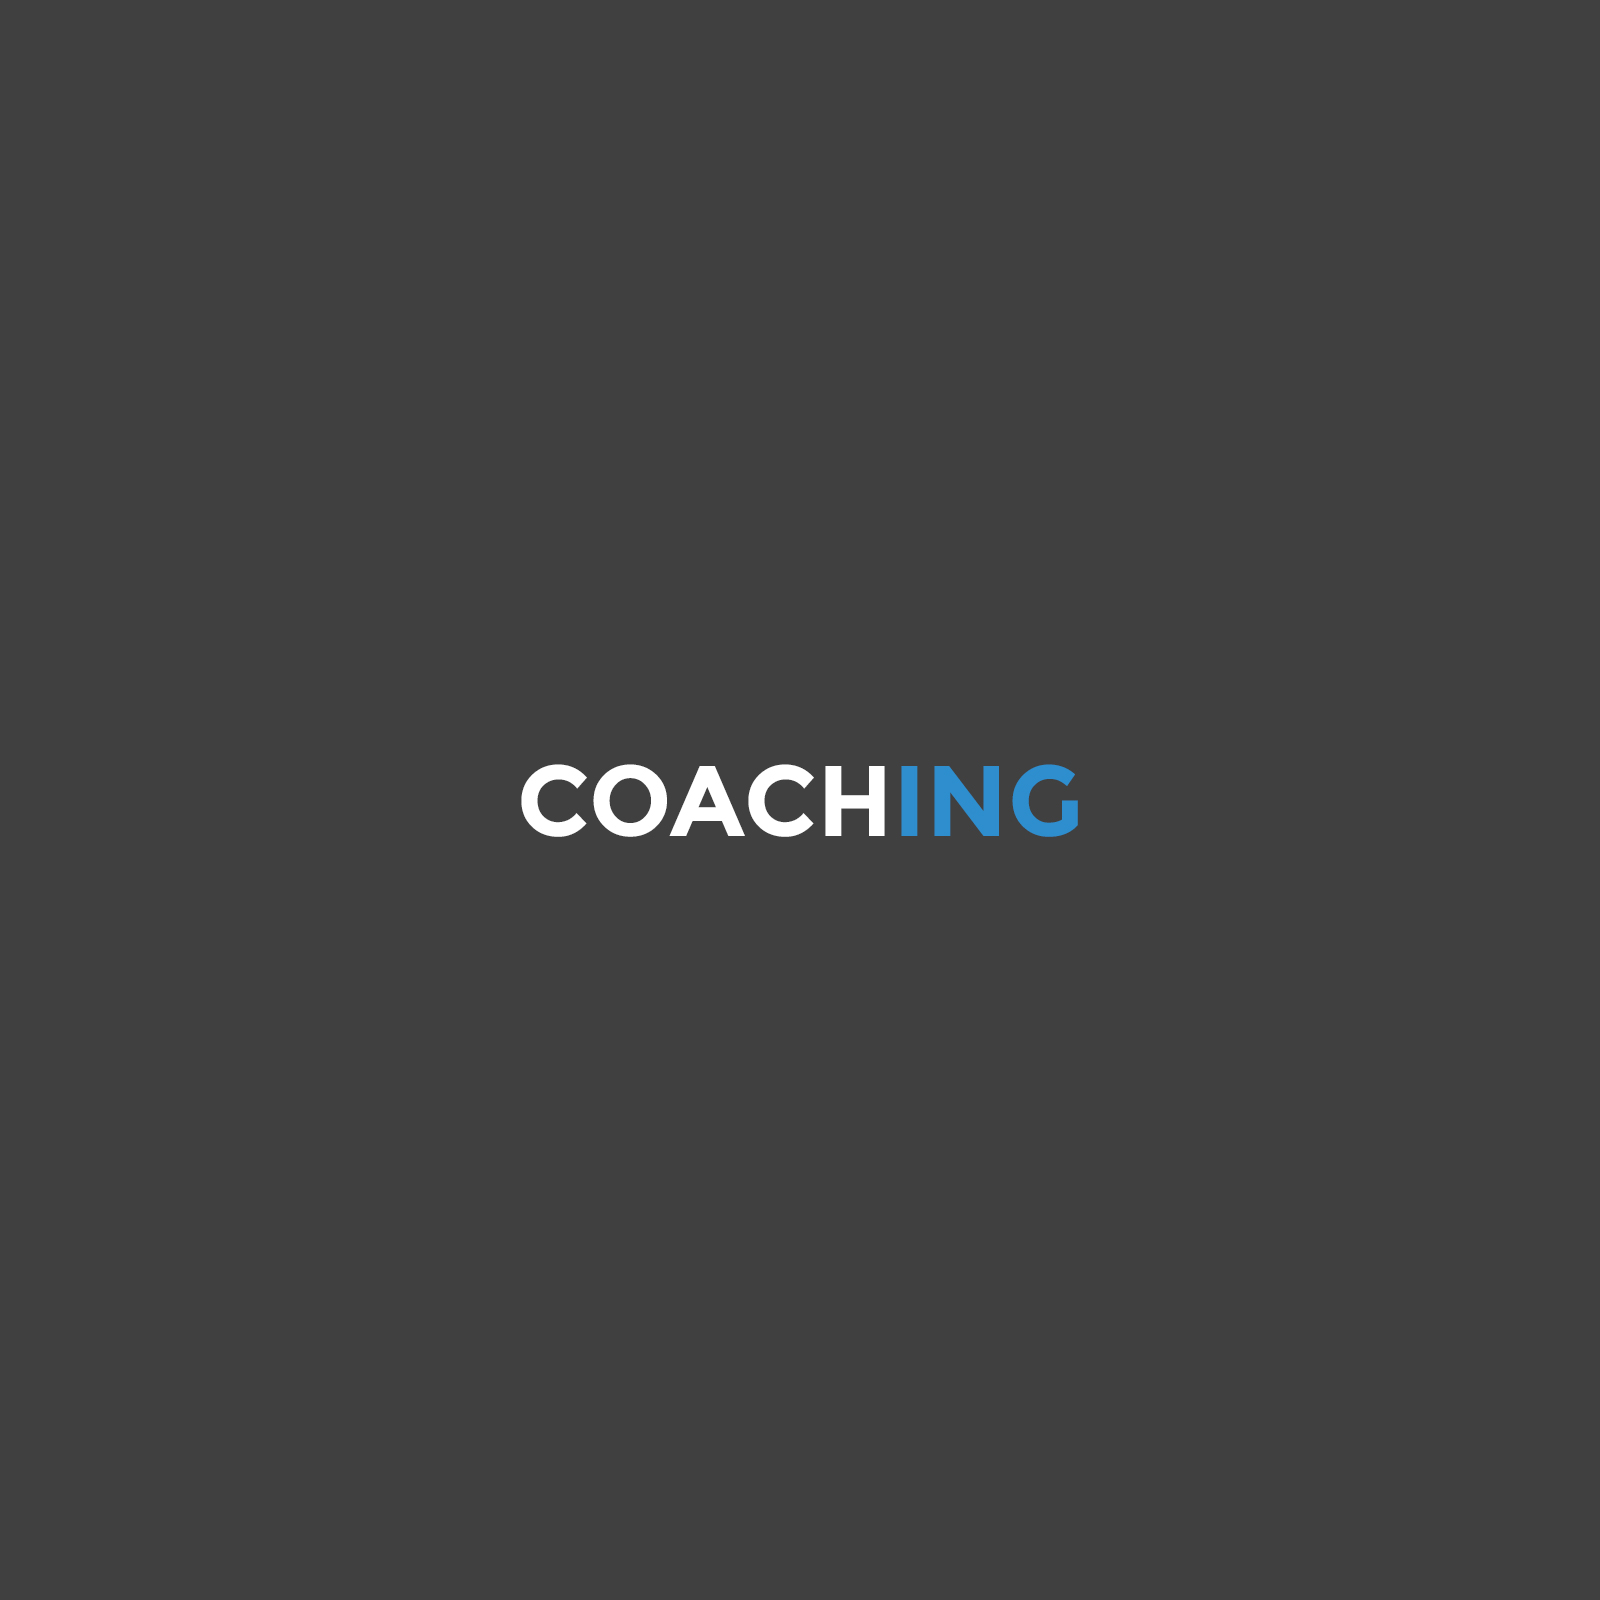 Il coaching è la sua naturale vocazione